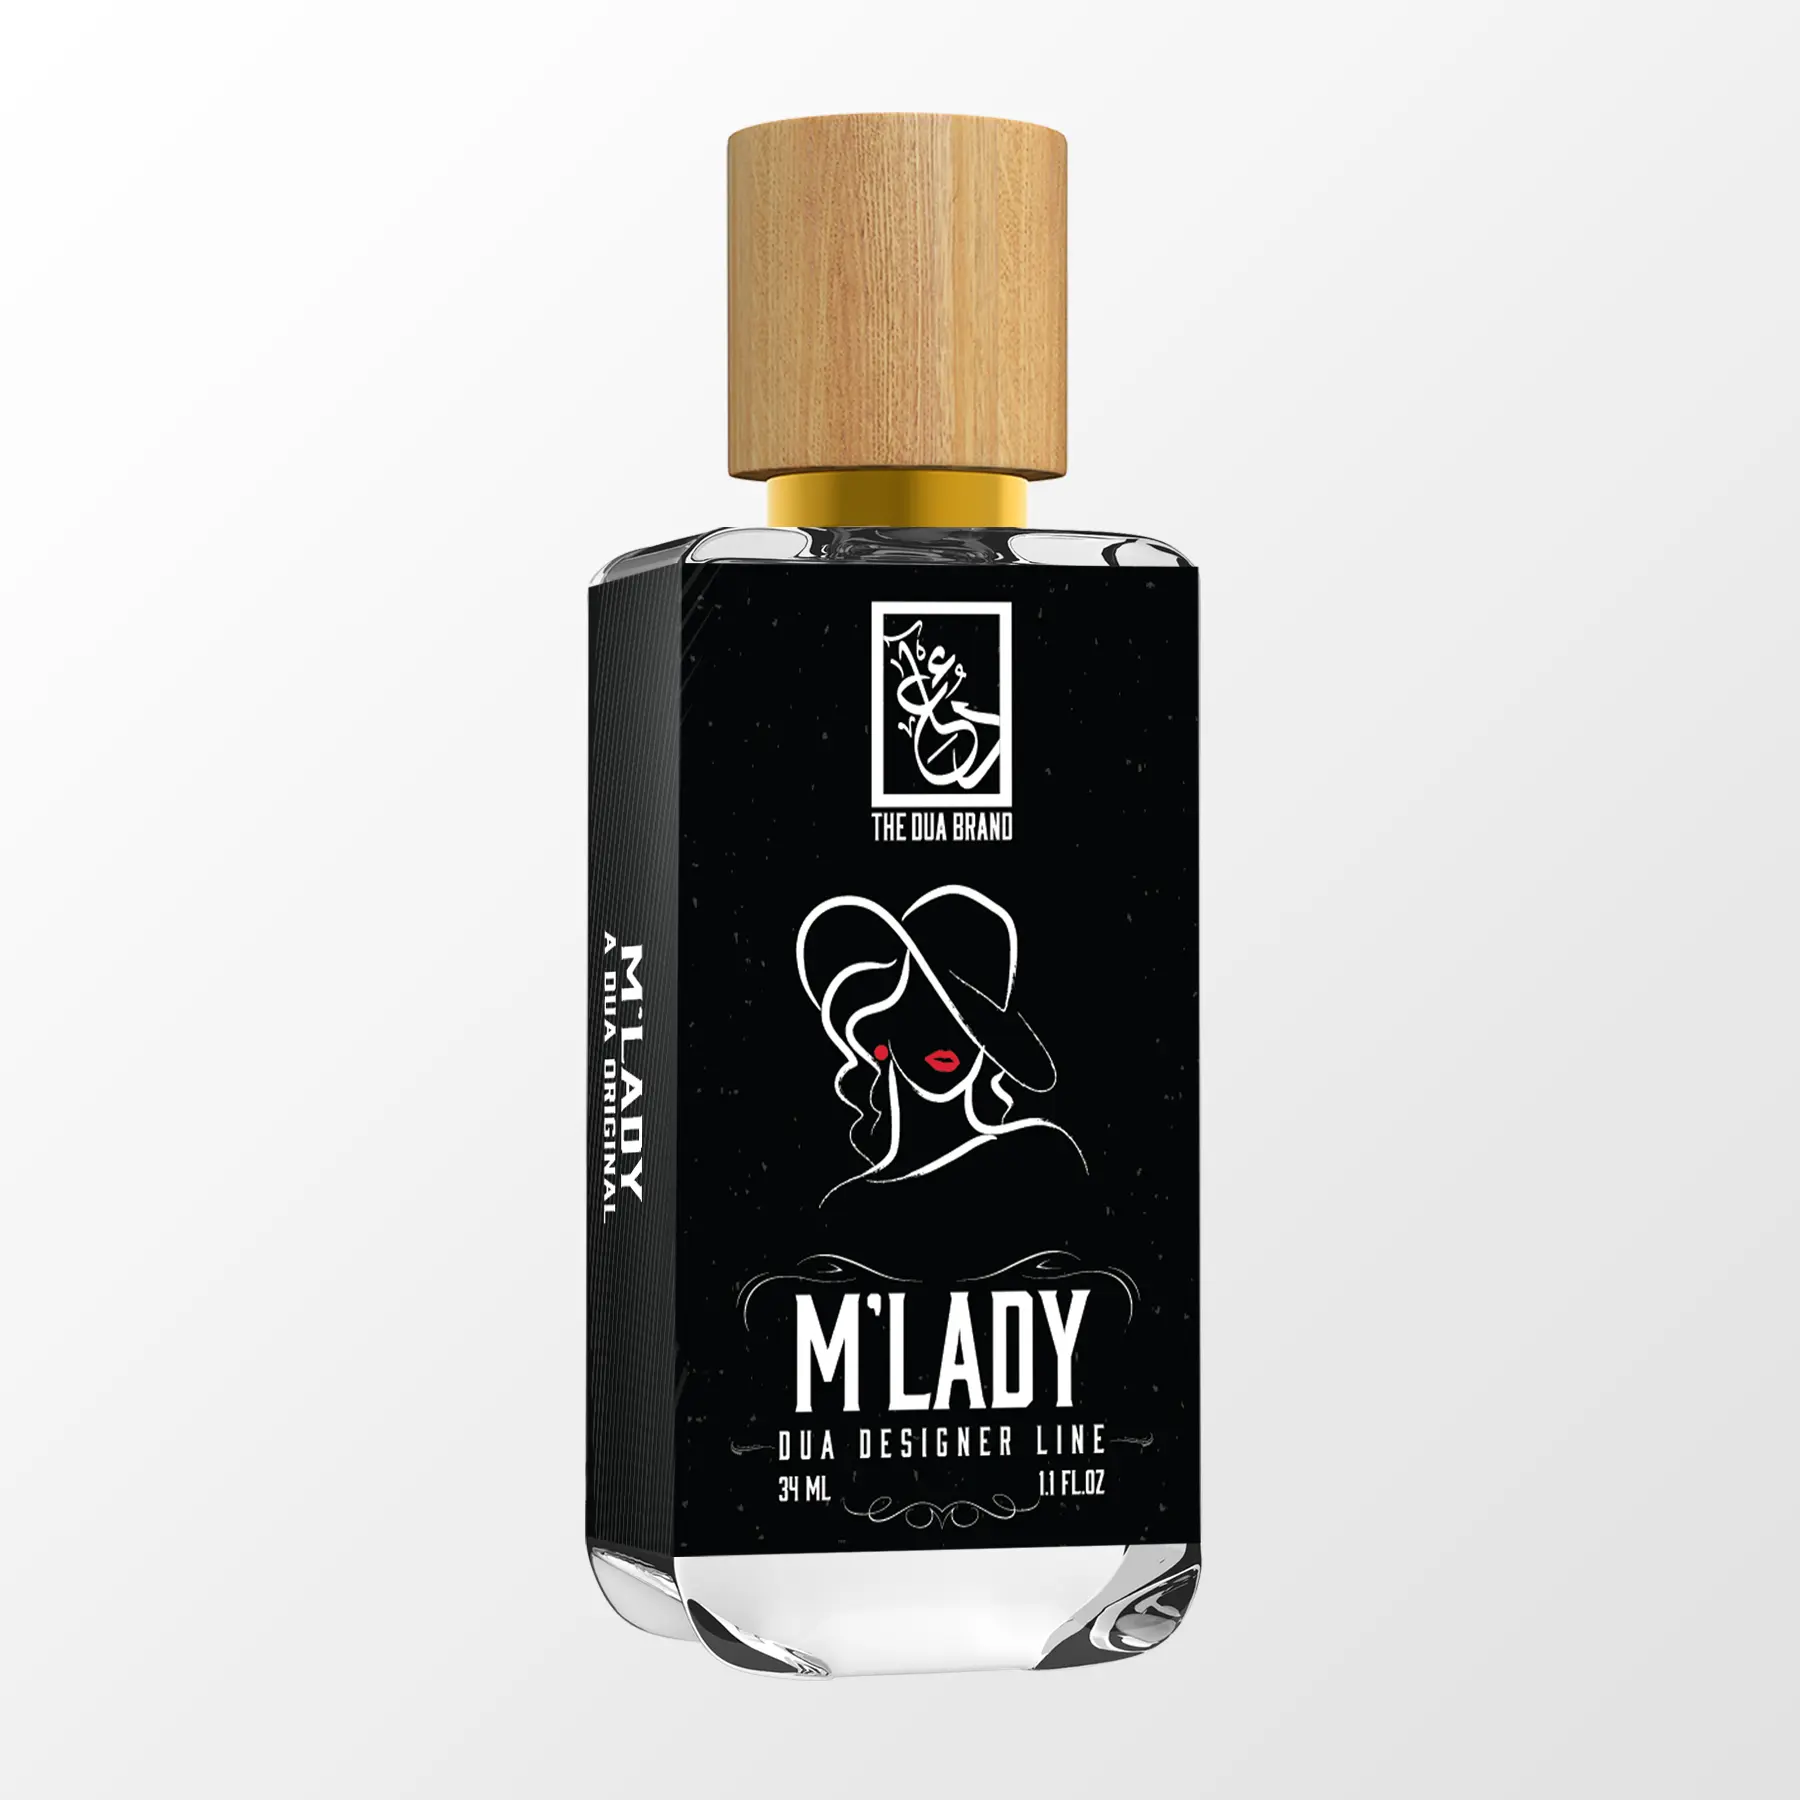 M'Lady - DUA FRAGRANCES - Floral Oriental - Feminine Perfume - 34ml/1.1 FL  OZ - Extrait De Parfum